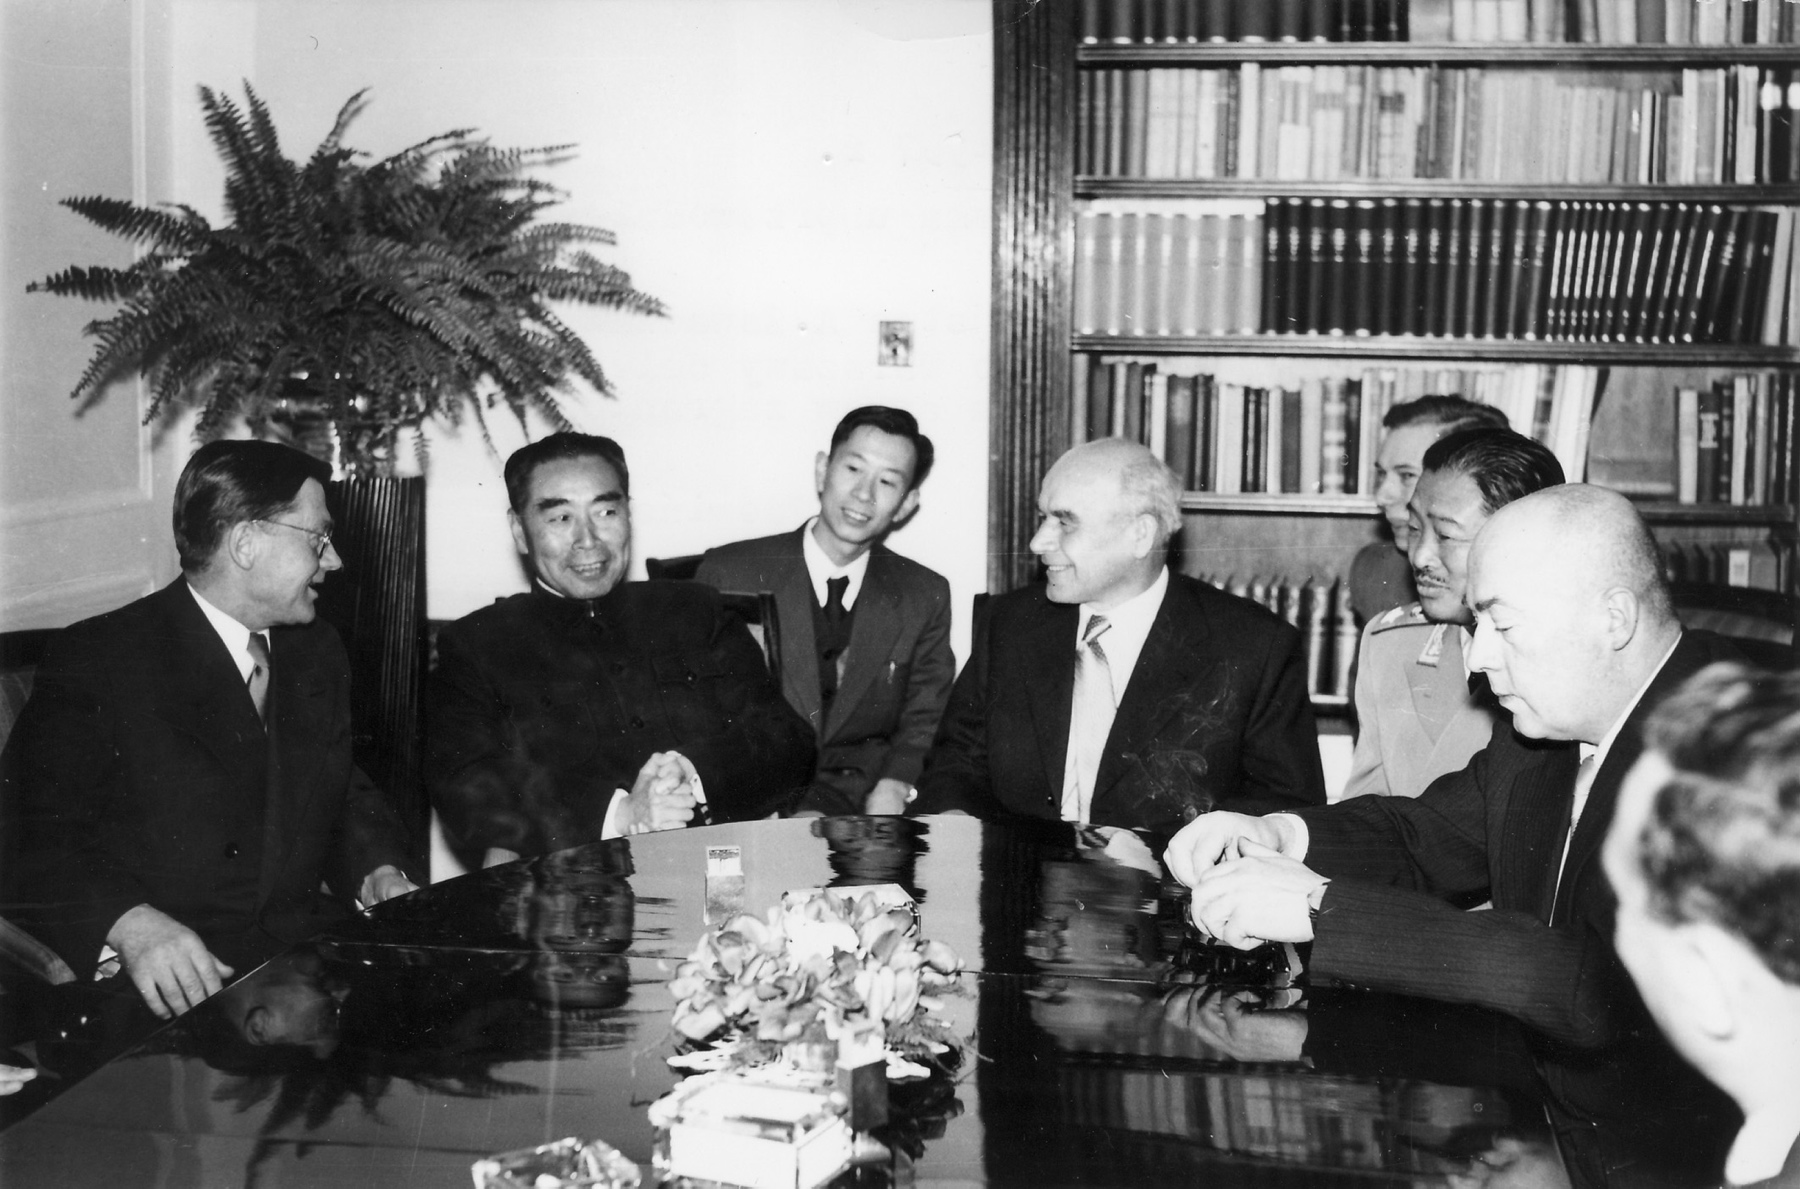 Wizyta rządowej delegacji Chin w Polsce. Od lewej: Aleksander Zawadzki, Zhou Enlai, Władysław Gomułka i Józef Cyrankiewicz, 1957 r